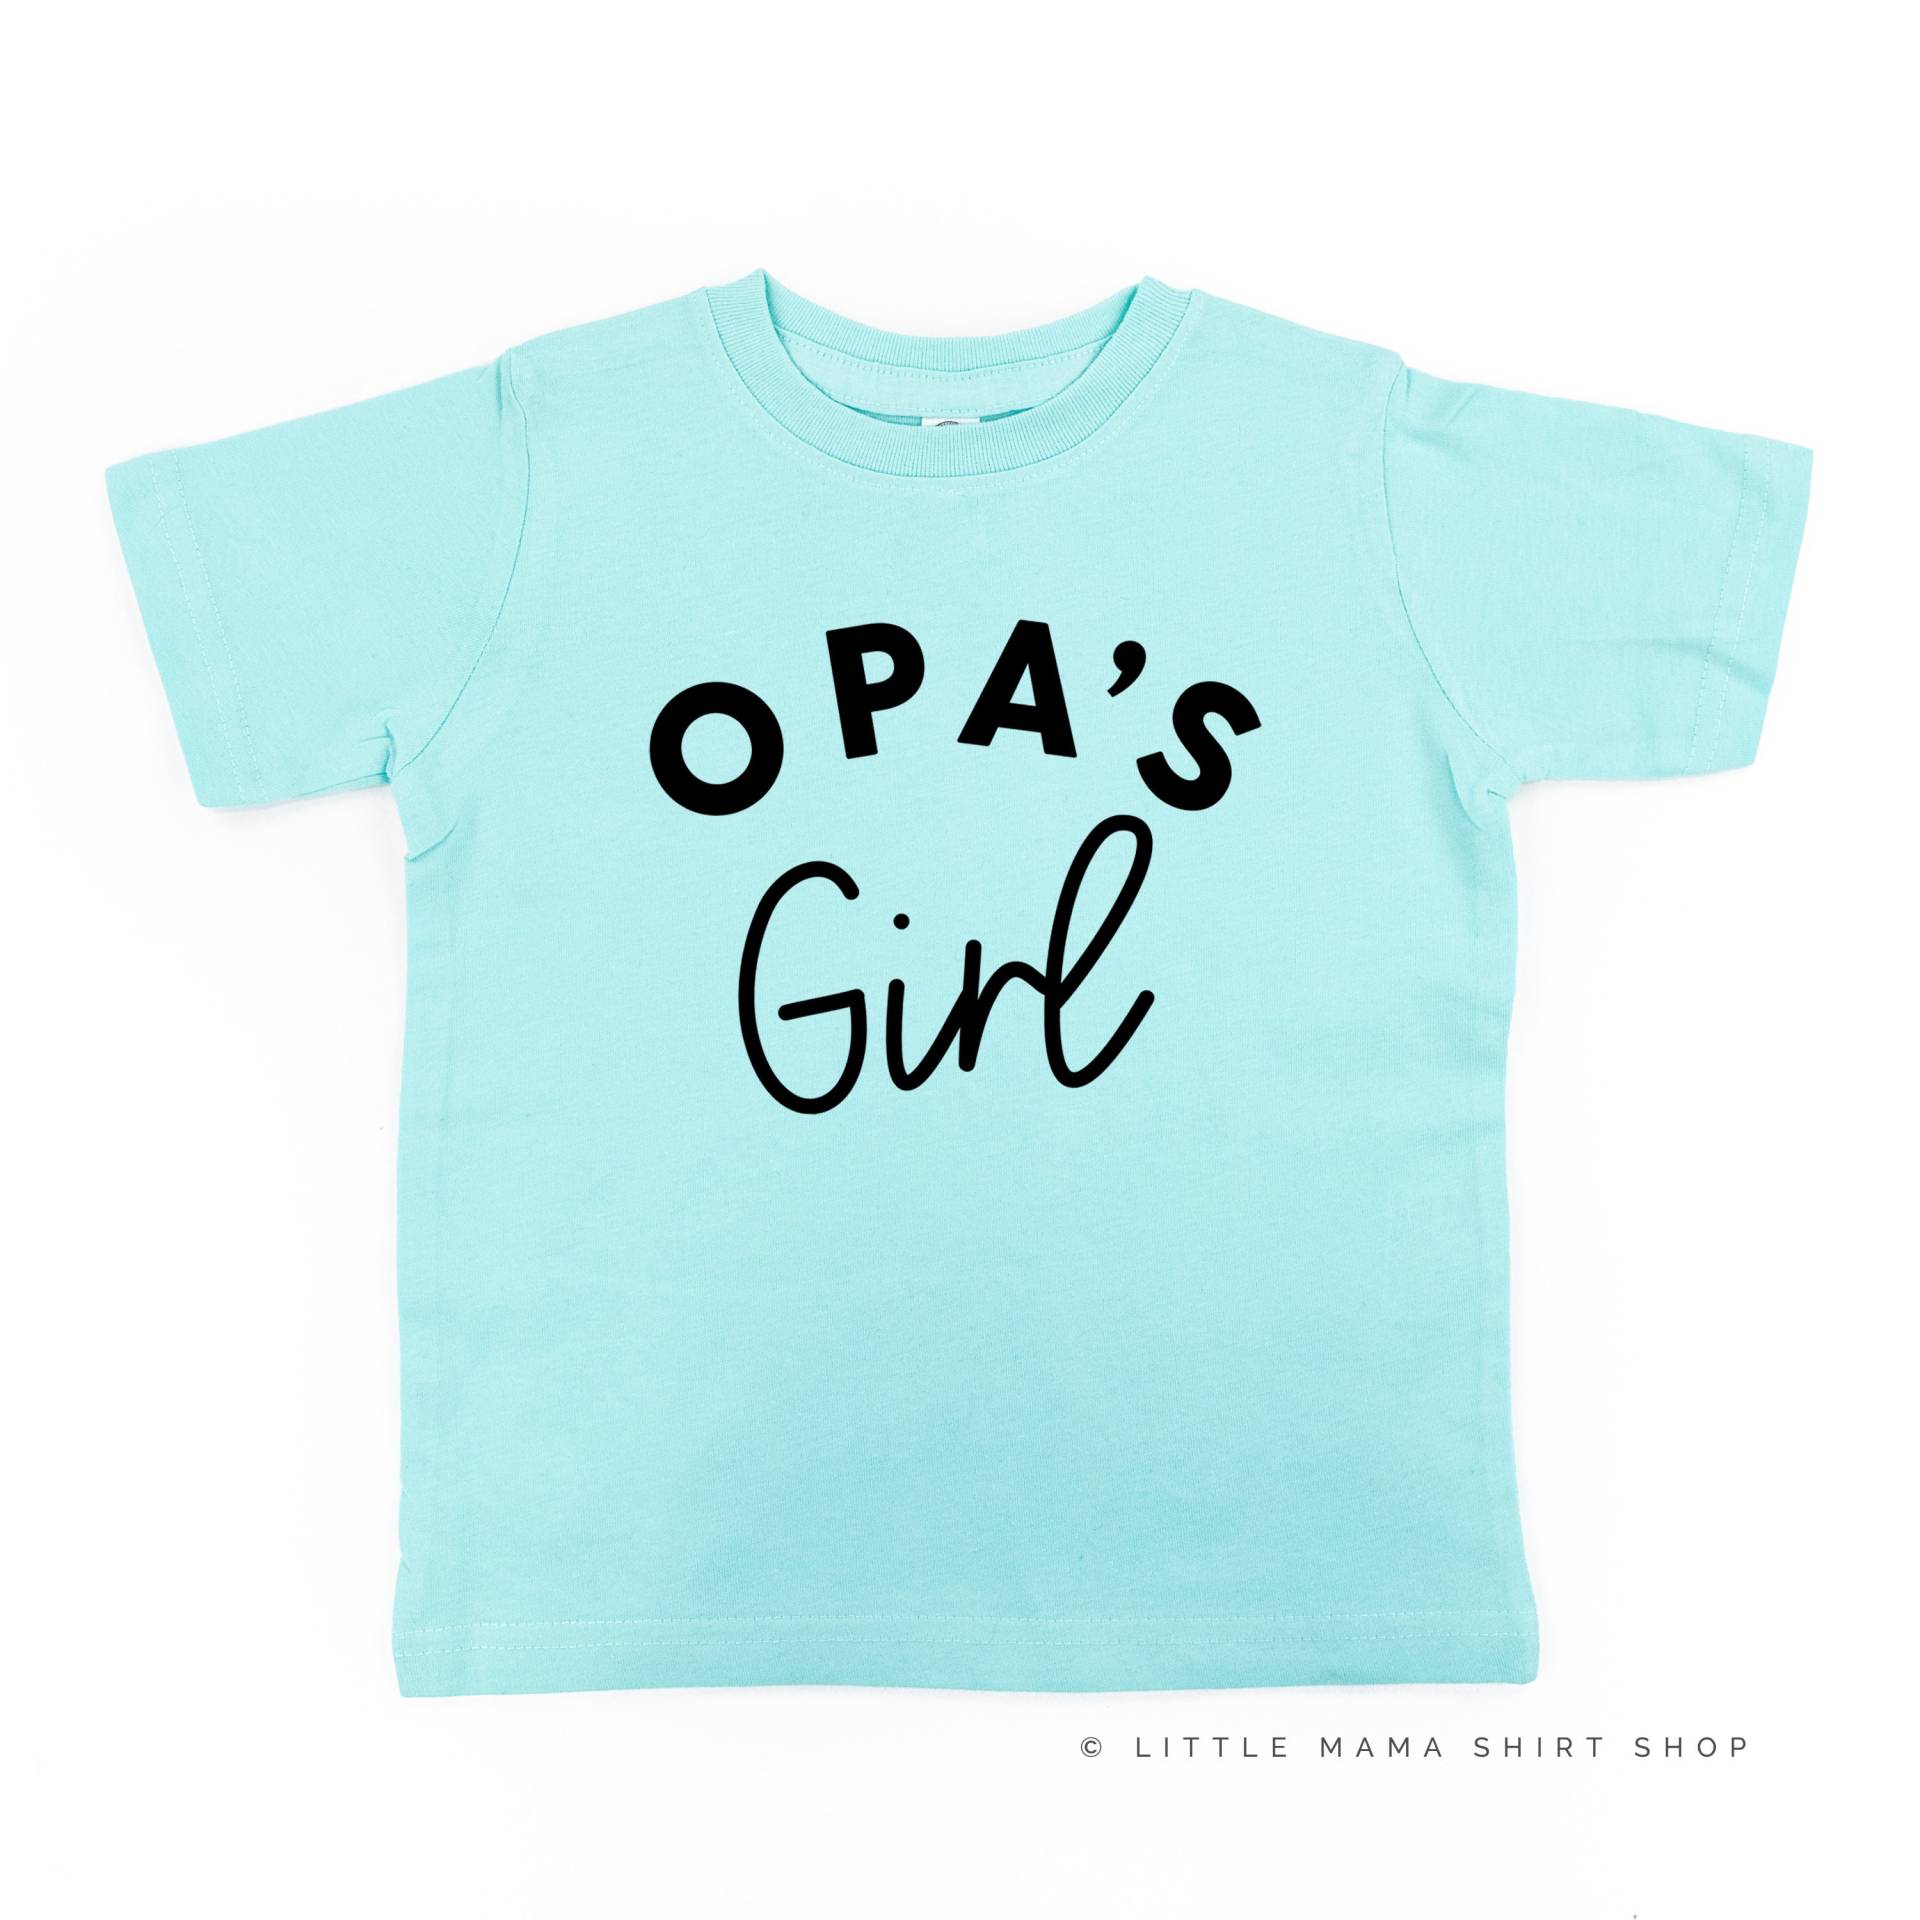 Opas Mädchen | Kleinkind Shirt Shirts Für Kleine T-Shirts Baby von LittleMamaShirtShop